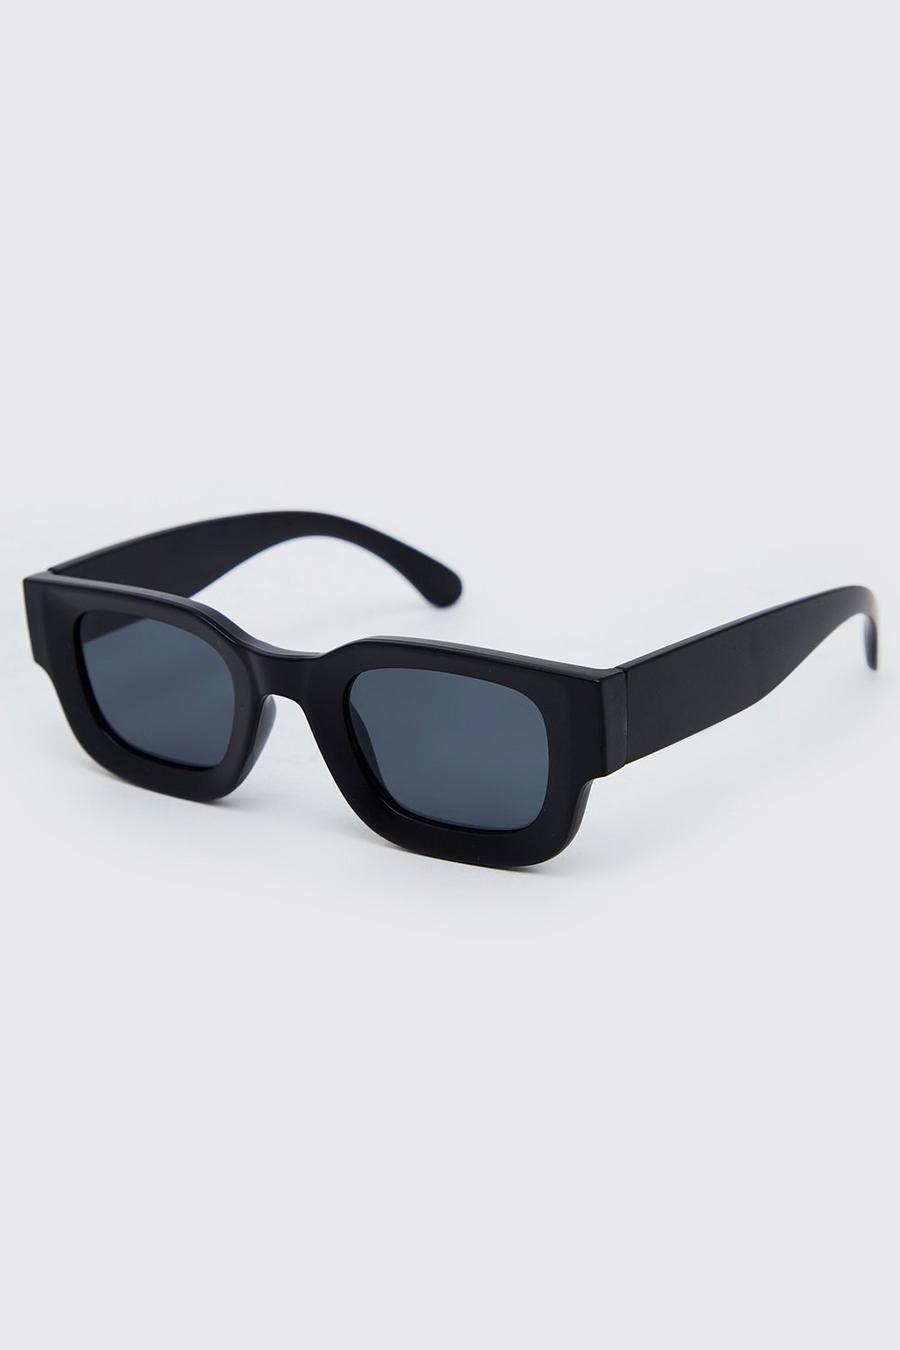 Gafas de sol recicladas Wayfarer de plástico gruesas, Black nero